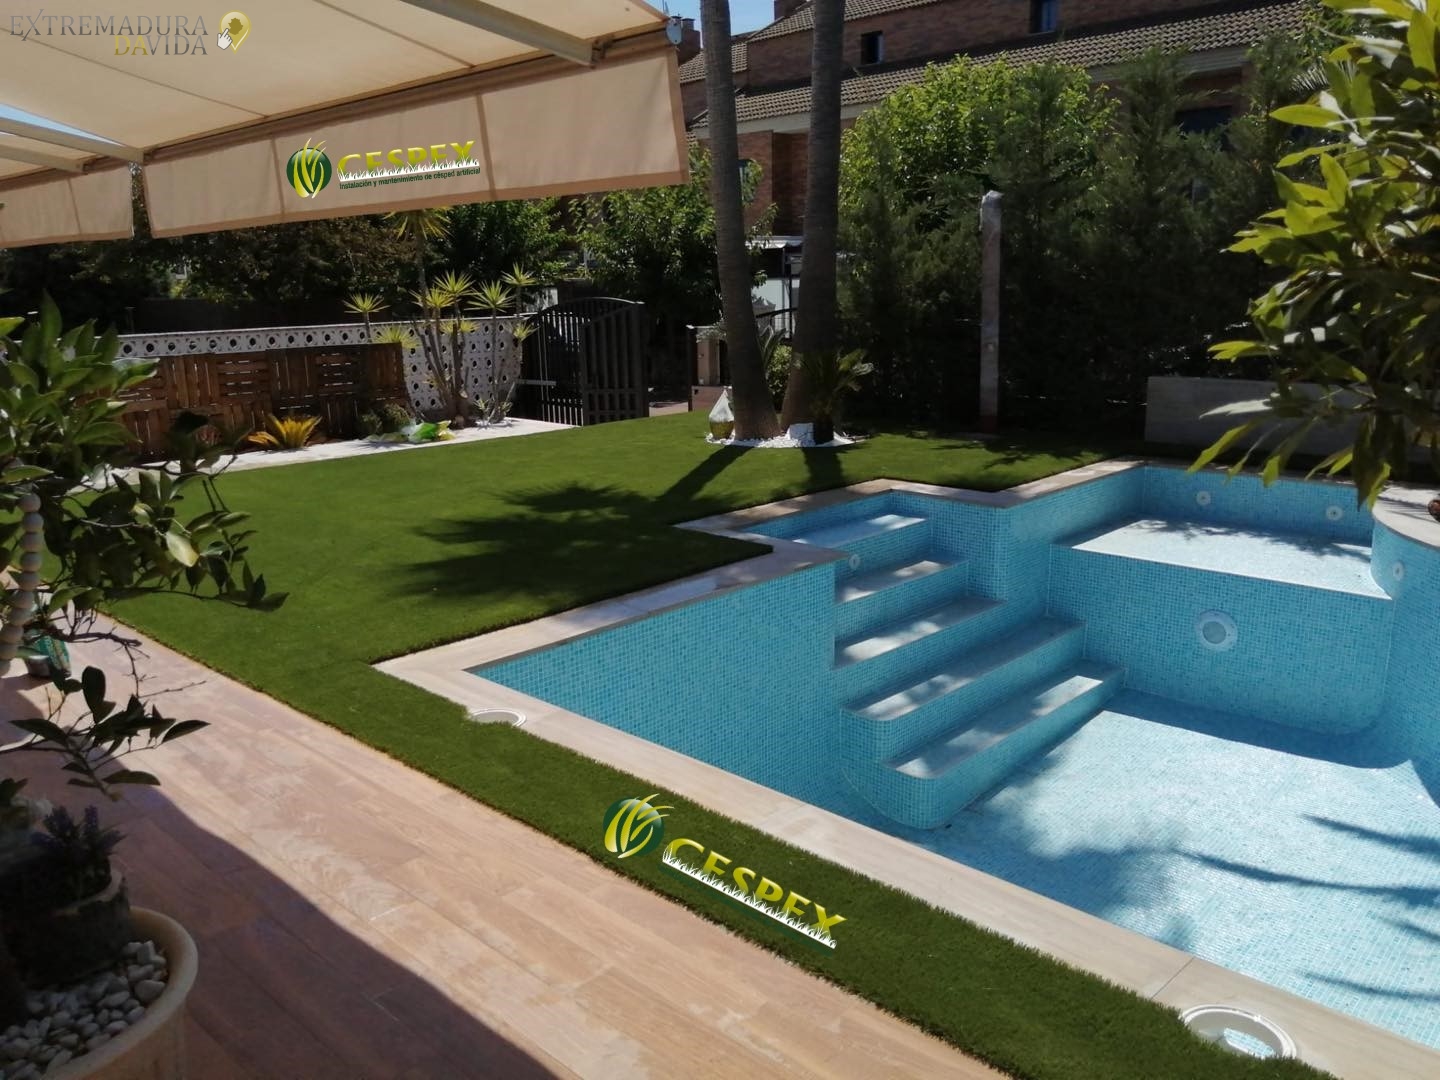 Cesped Artificial jardines piscinas en Almendralejo Cespex